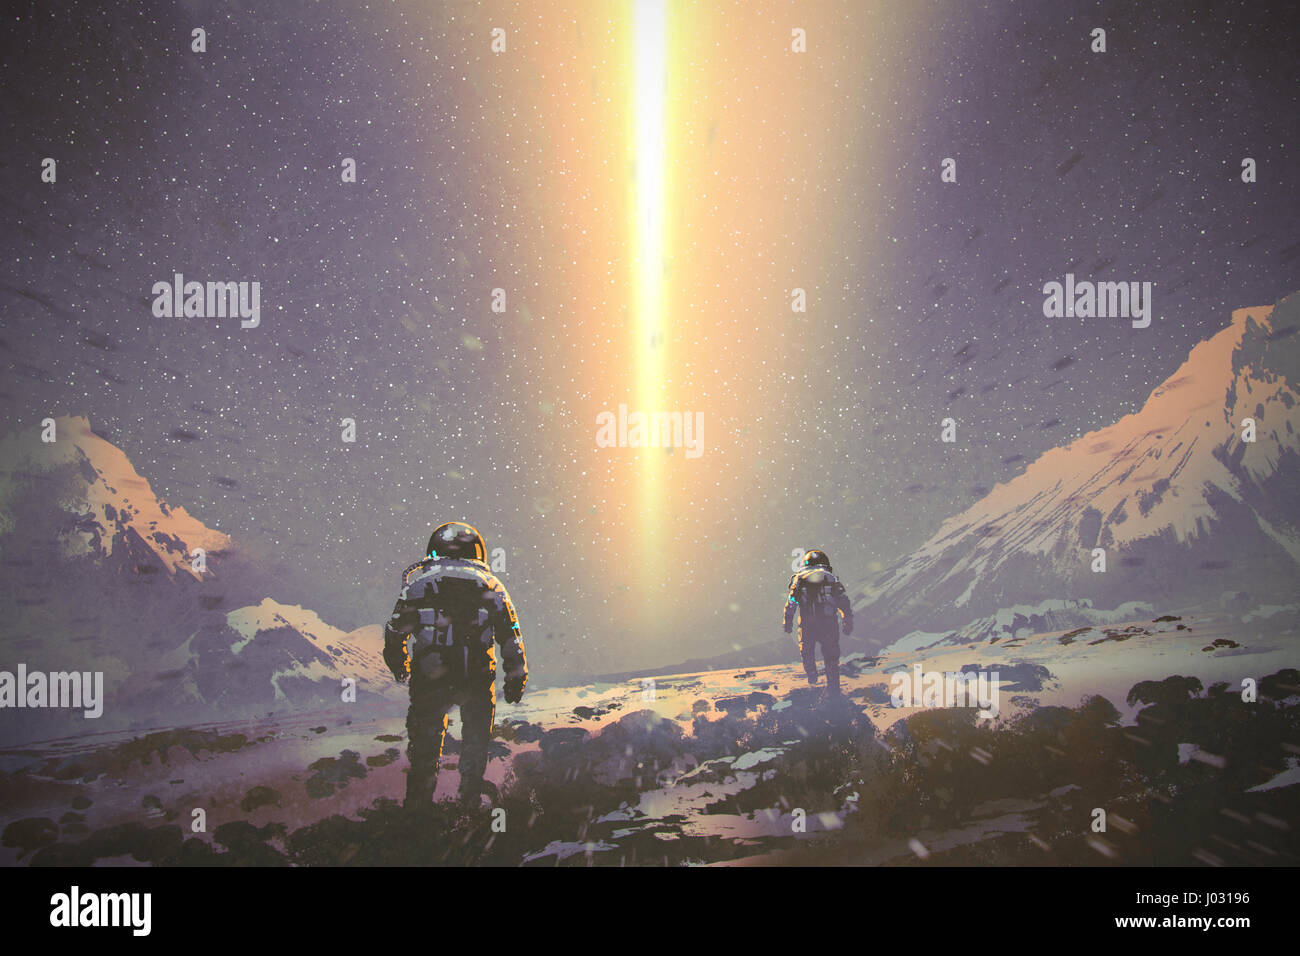 Gli astronauti a piedi al mistero del fascio di luce dal cielo, sci-fi concetto, illustrazione pittura Foto Stock